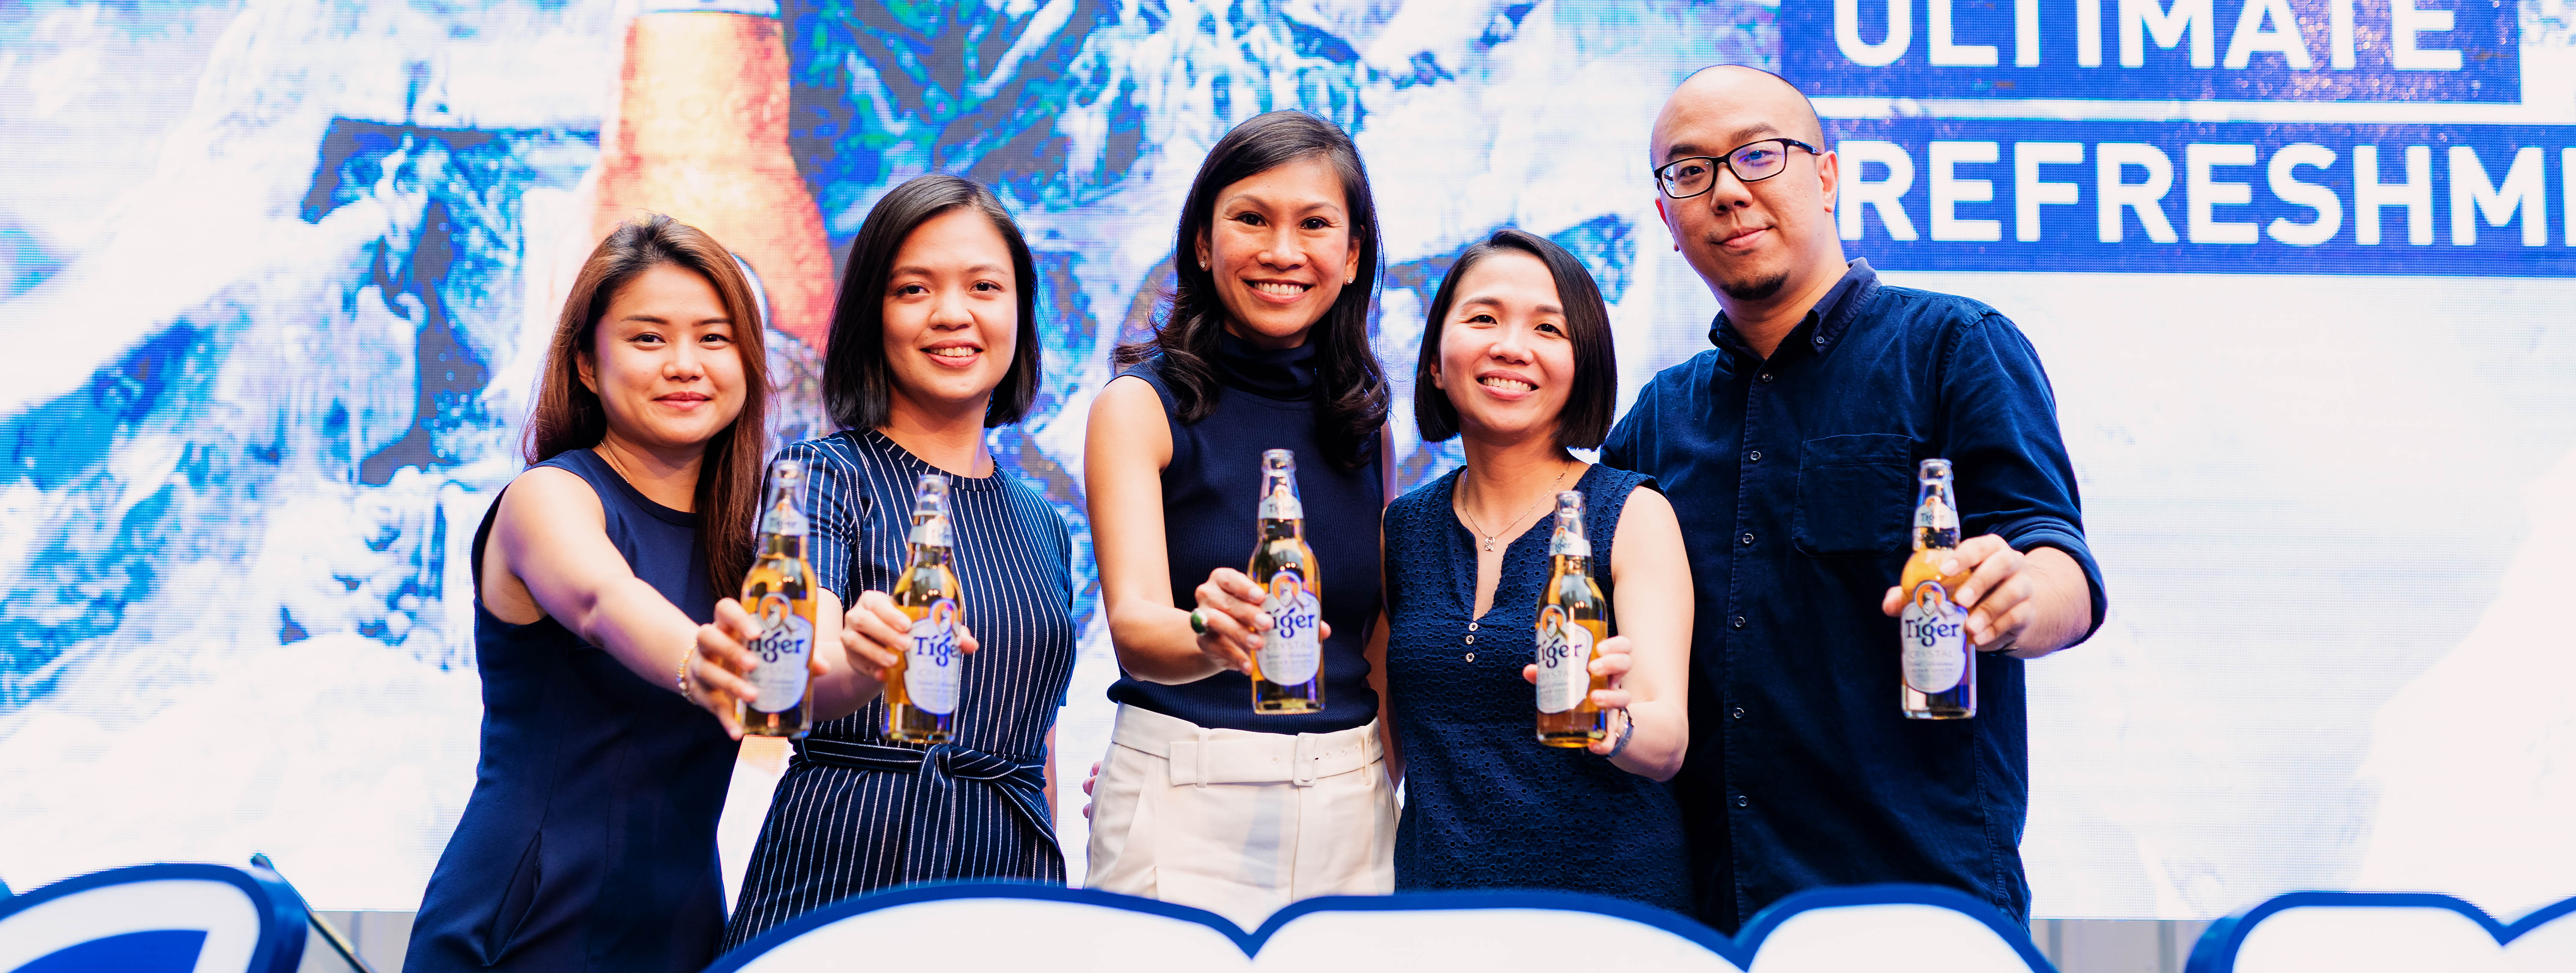 Tiger Beer Marketing Team 02-v3